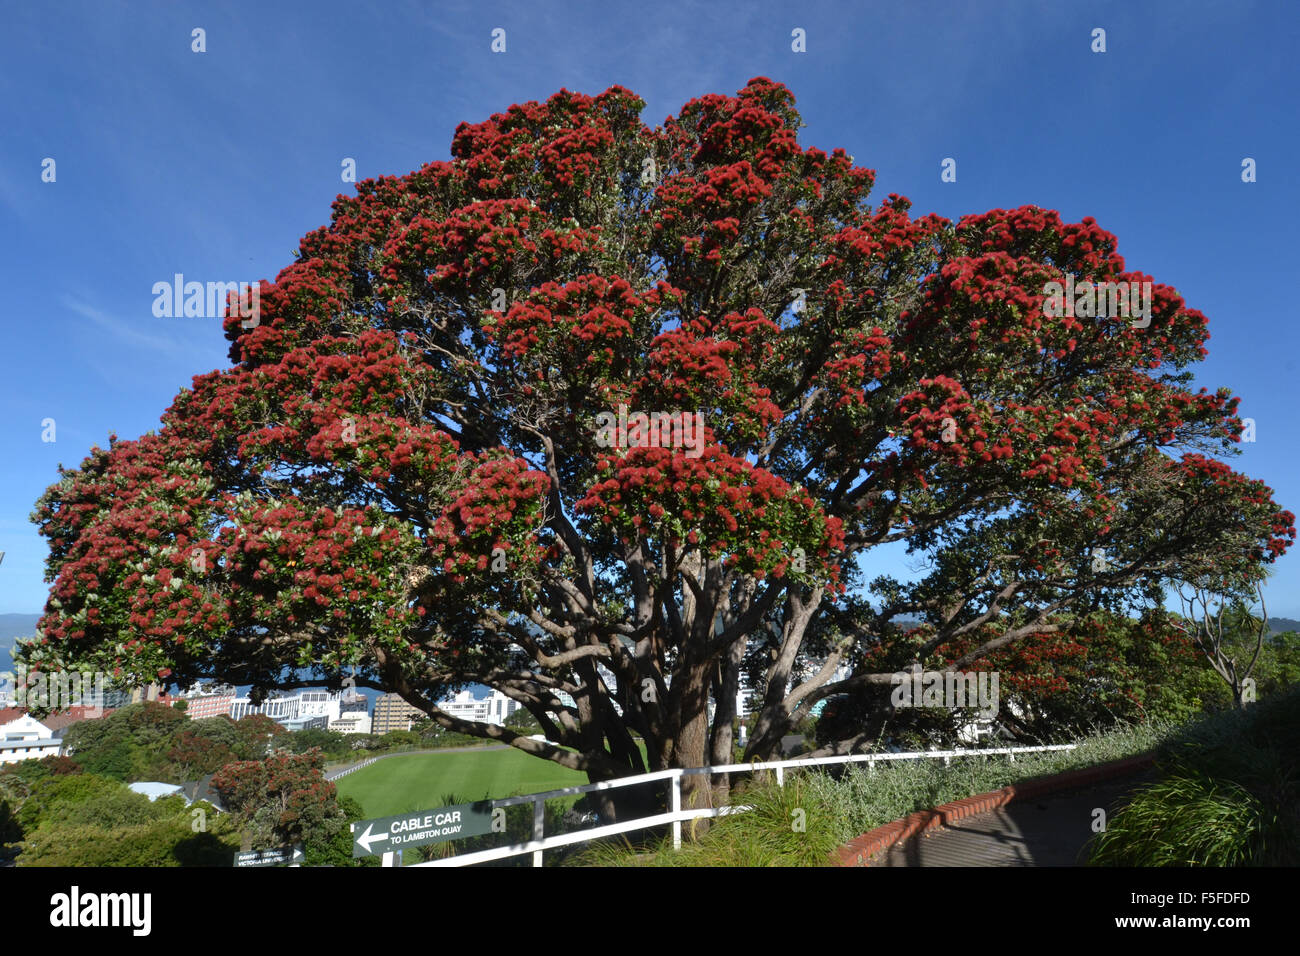 Pohutukawa Baum oder Neuseeland Weihnachtsbaum, Metrosideros Excelsa, blühend, endemisch, Wellington Botanic Garden, Neuseeland Stockfoto